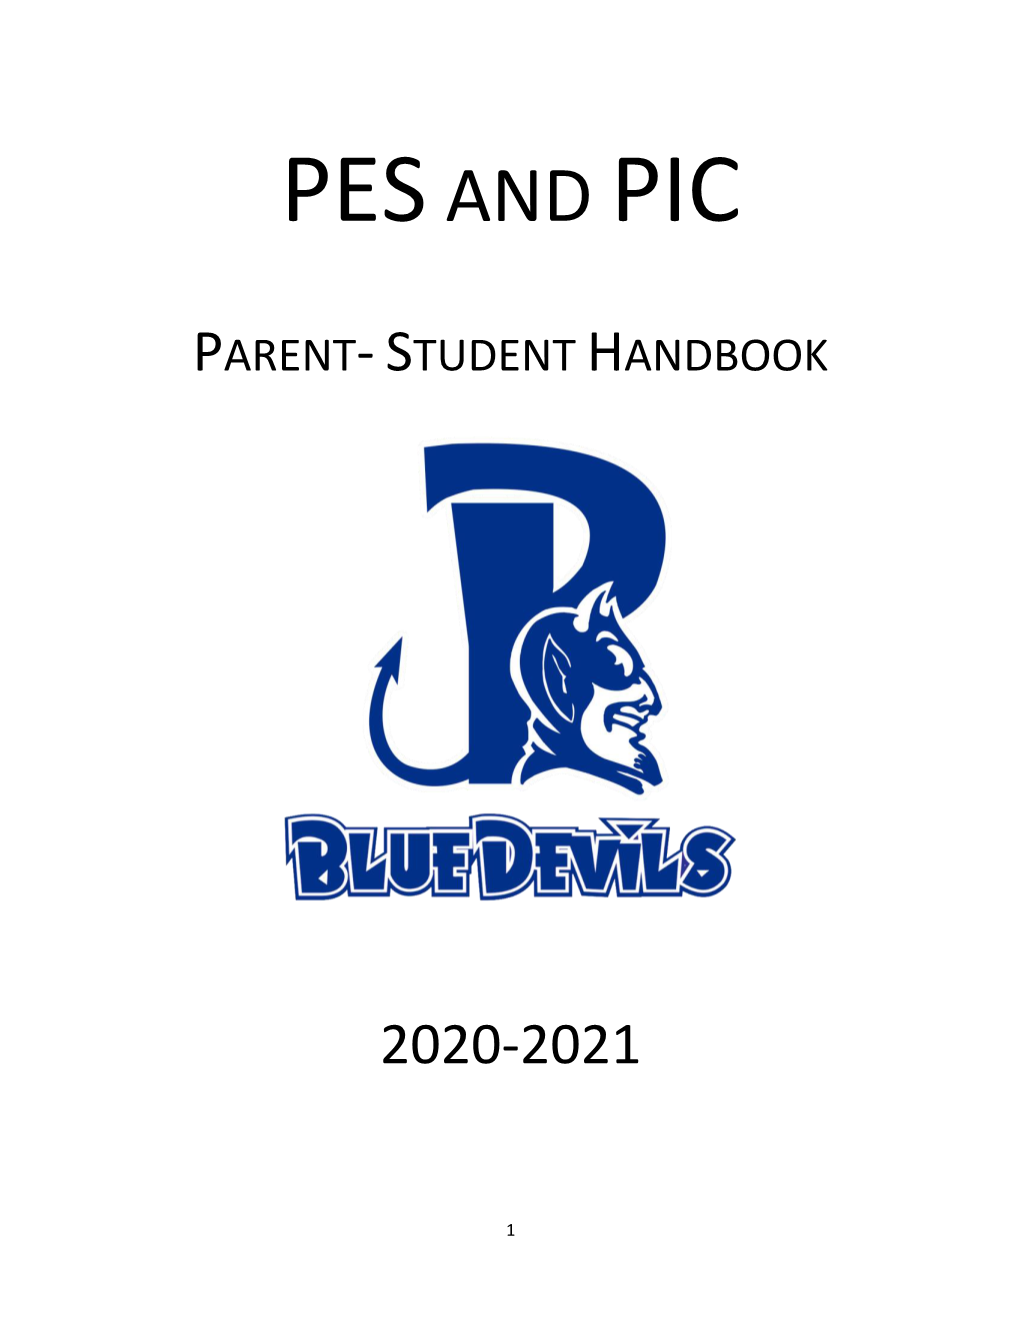 PES and PIC Handbook 2